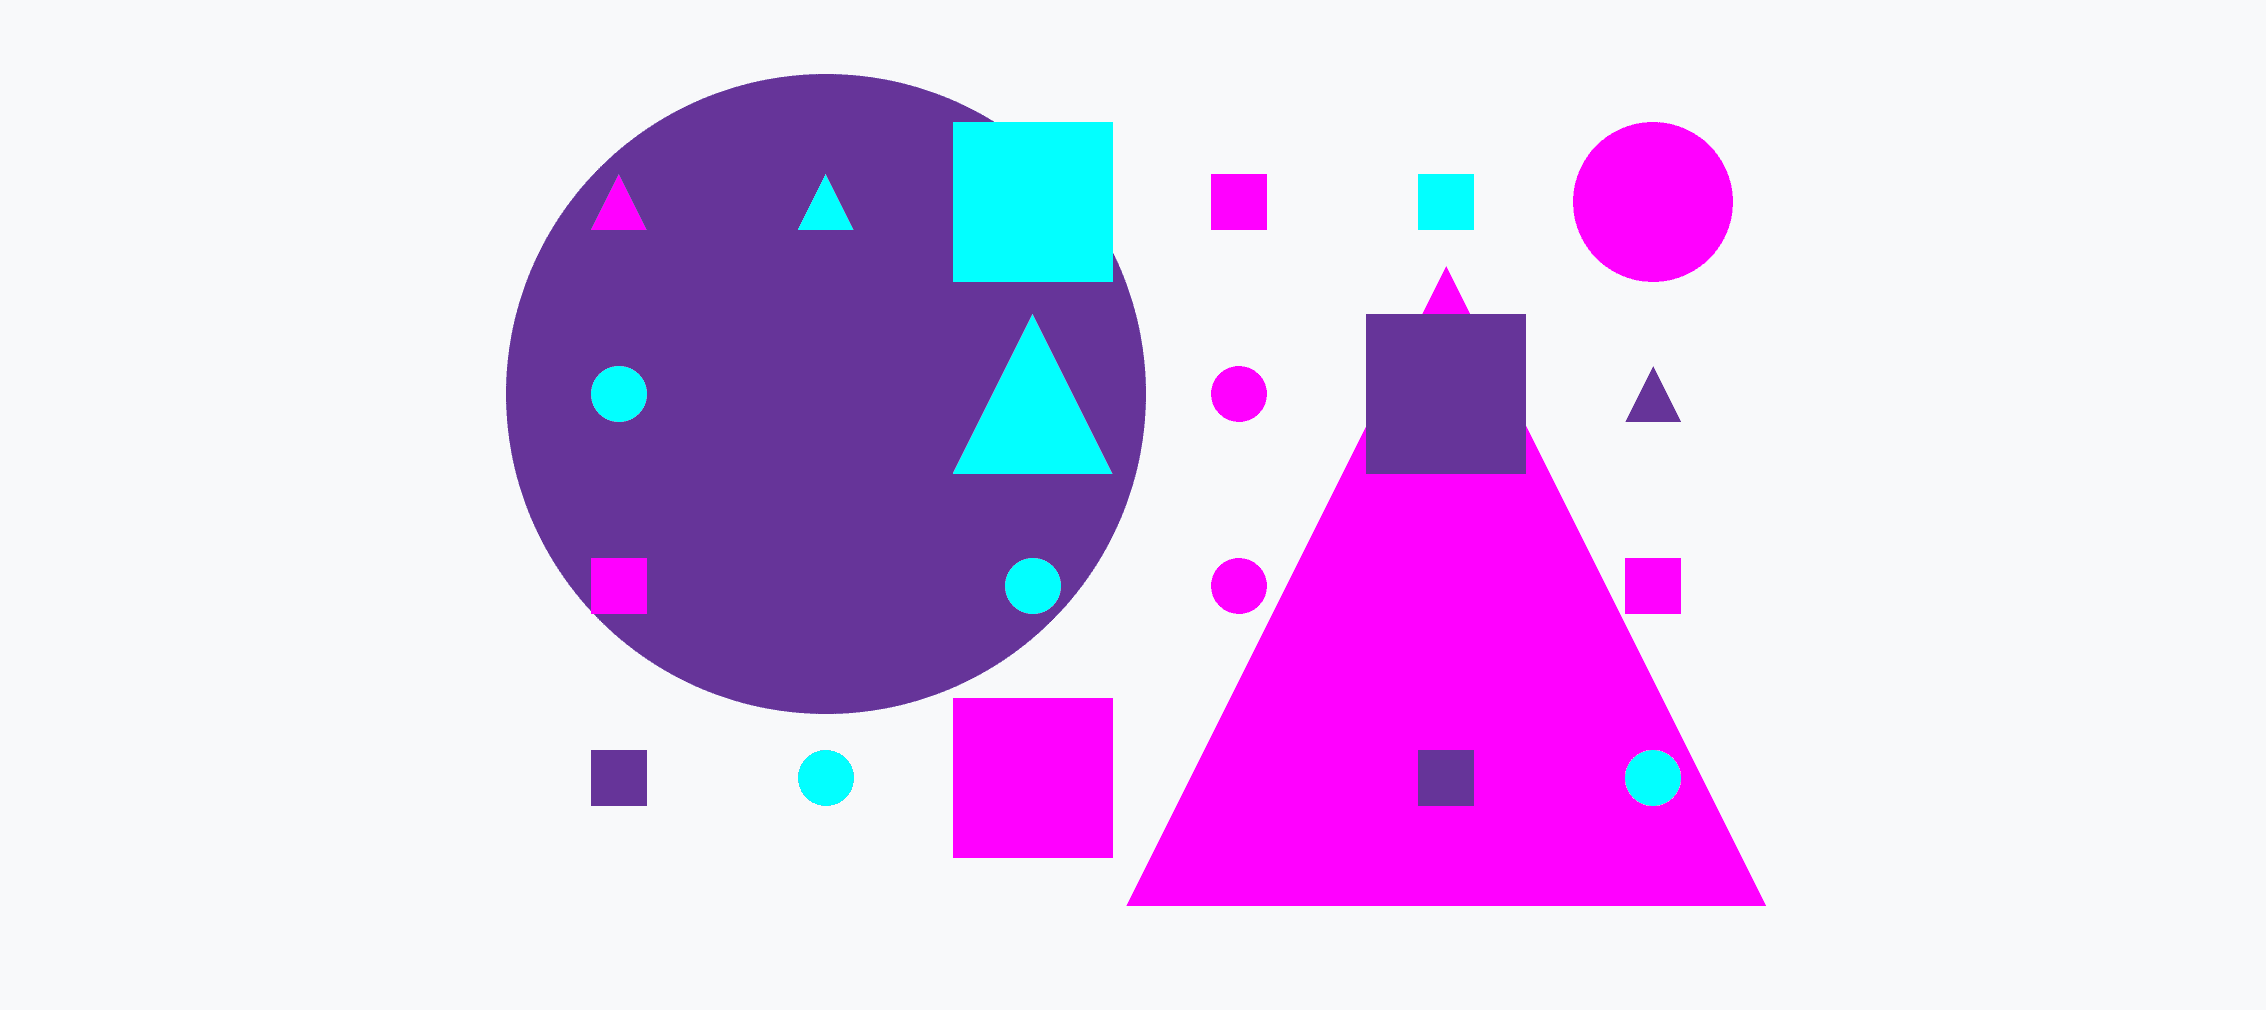 Ein buntes Raster aus kleinen und großen Kreisen, Dreiecken und Quadraten.